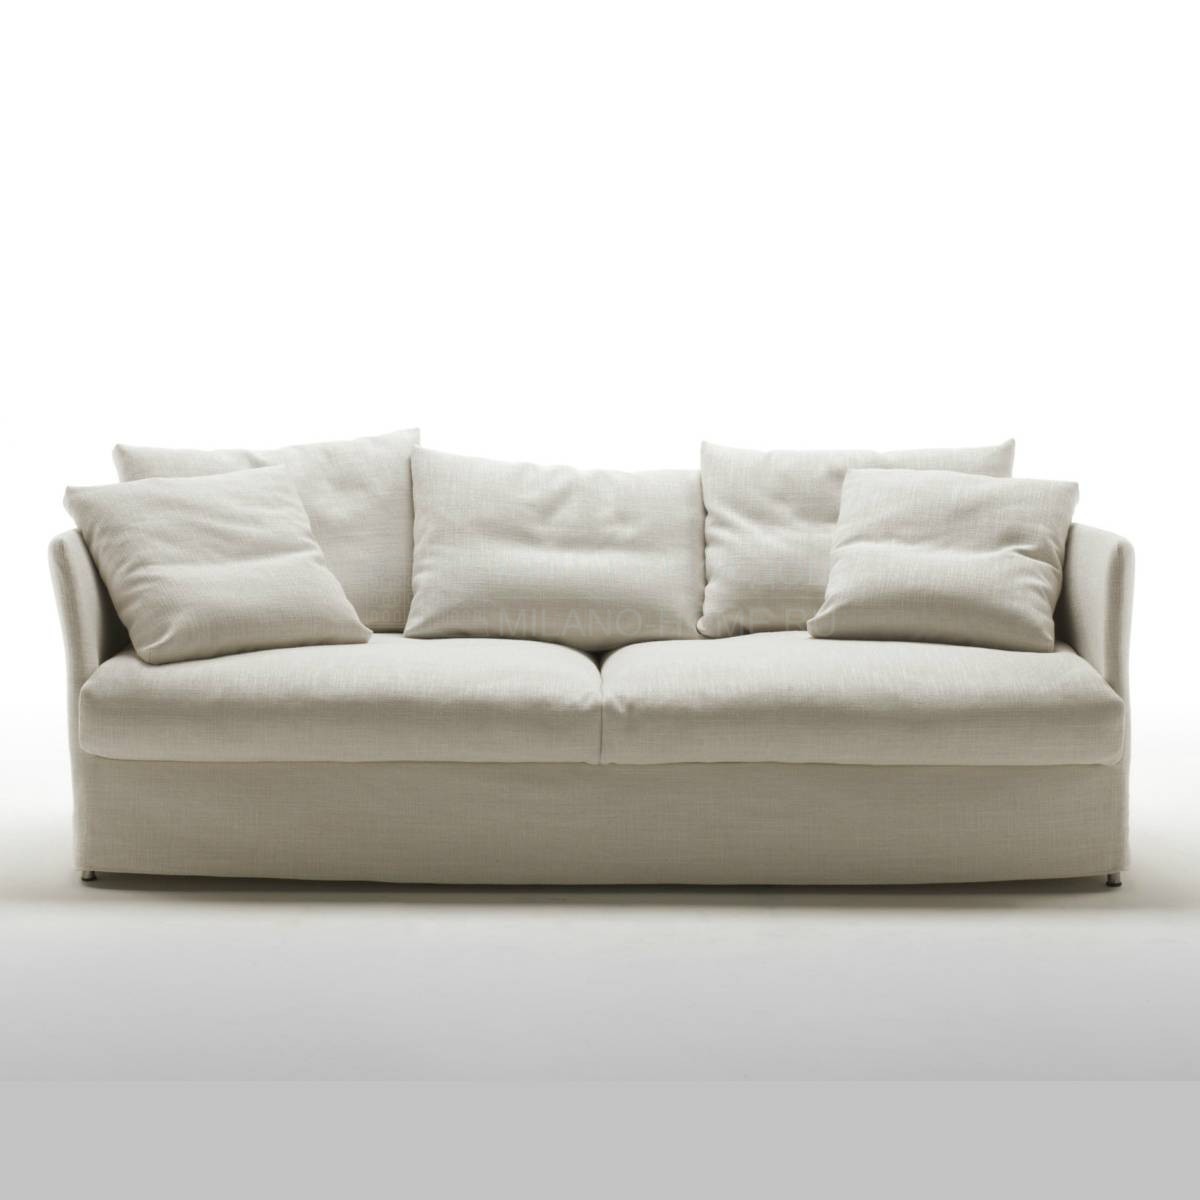 Прямой диван Curve sofa из Италии фабрики LIVING DIVANI